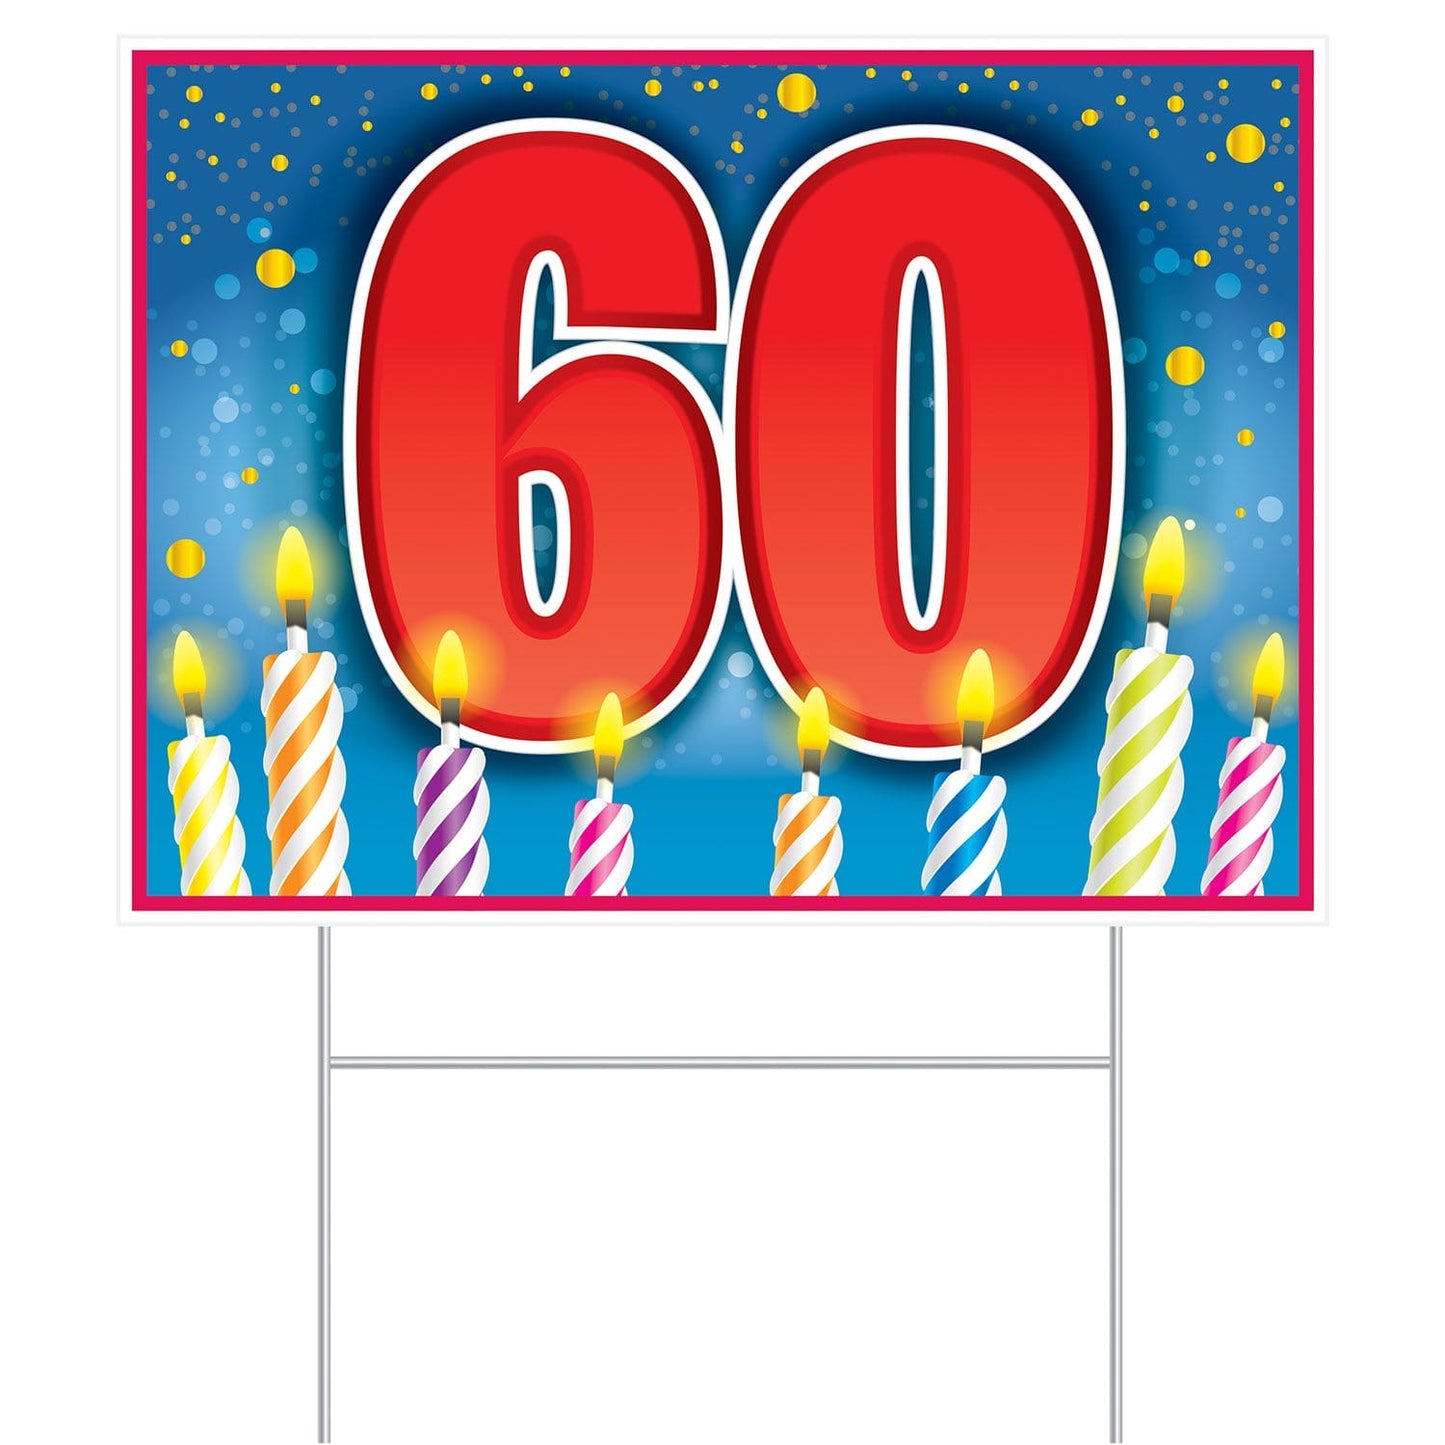 Plastic 60 Birthday Yard Sign